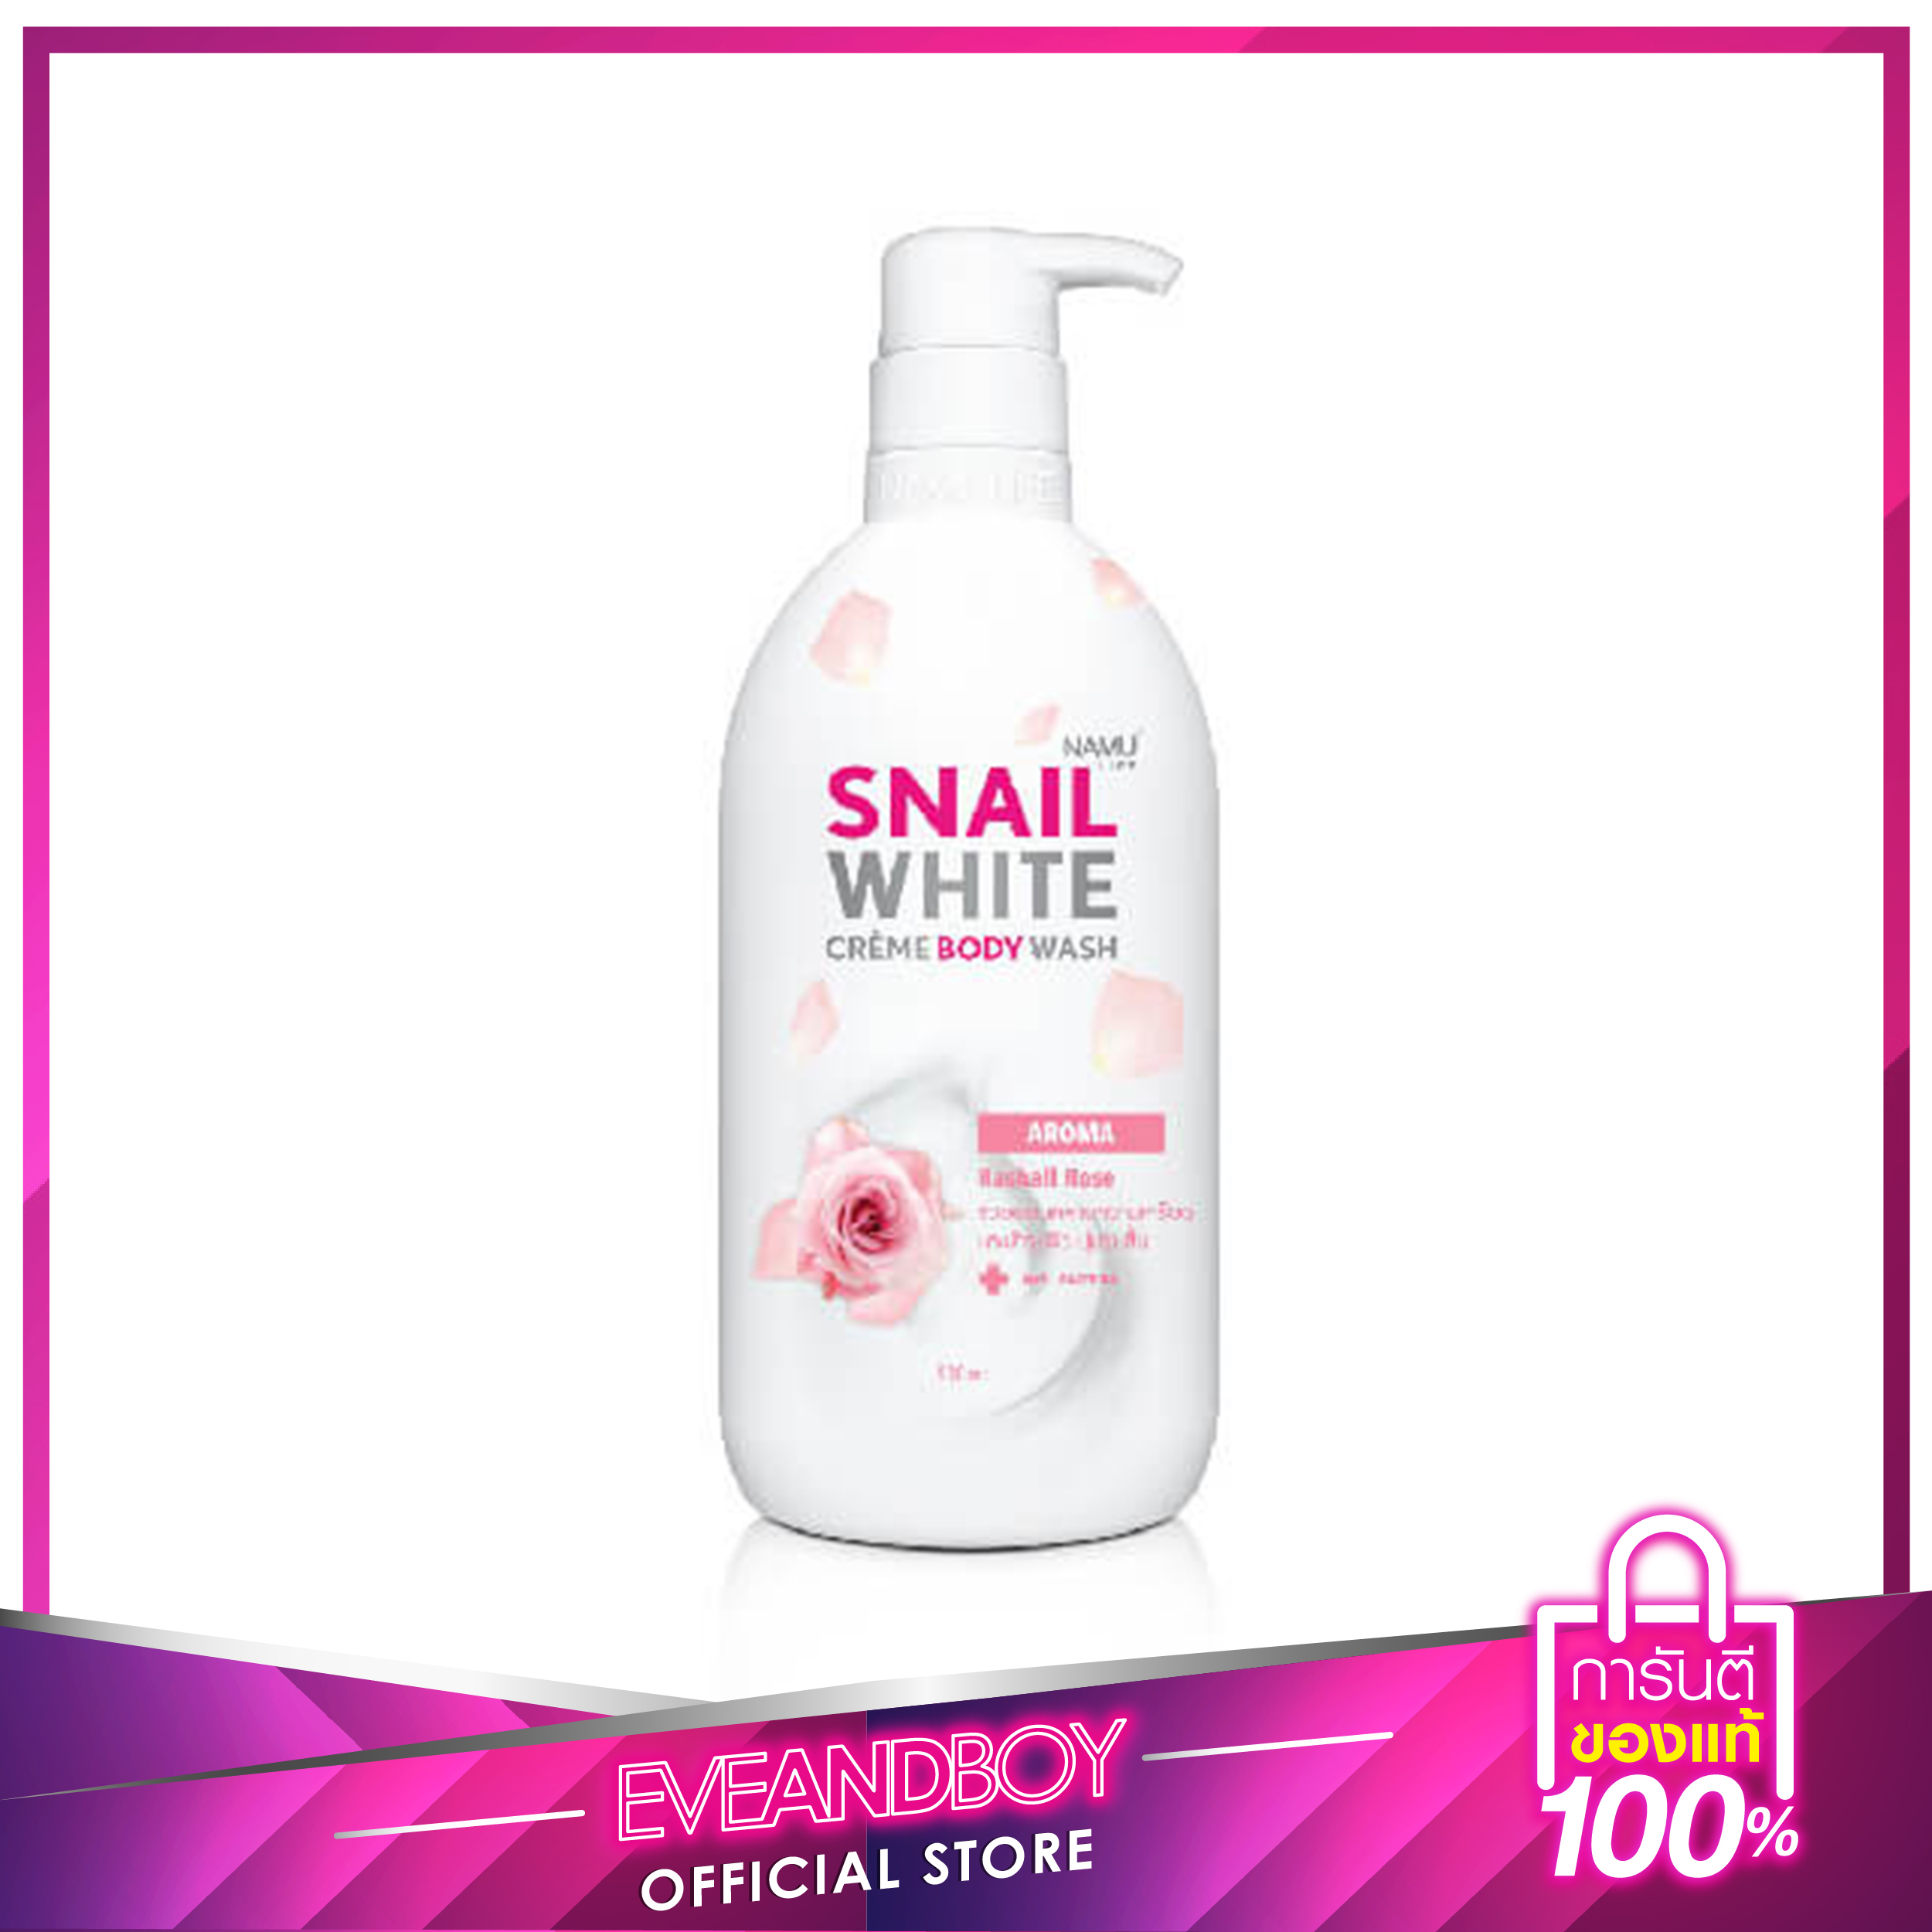 NAMU Snail White Creame Body Wash Aroma Sashall Rose 500 ml.